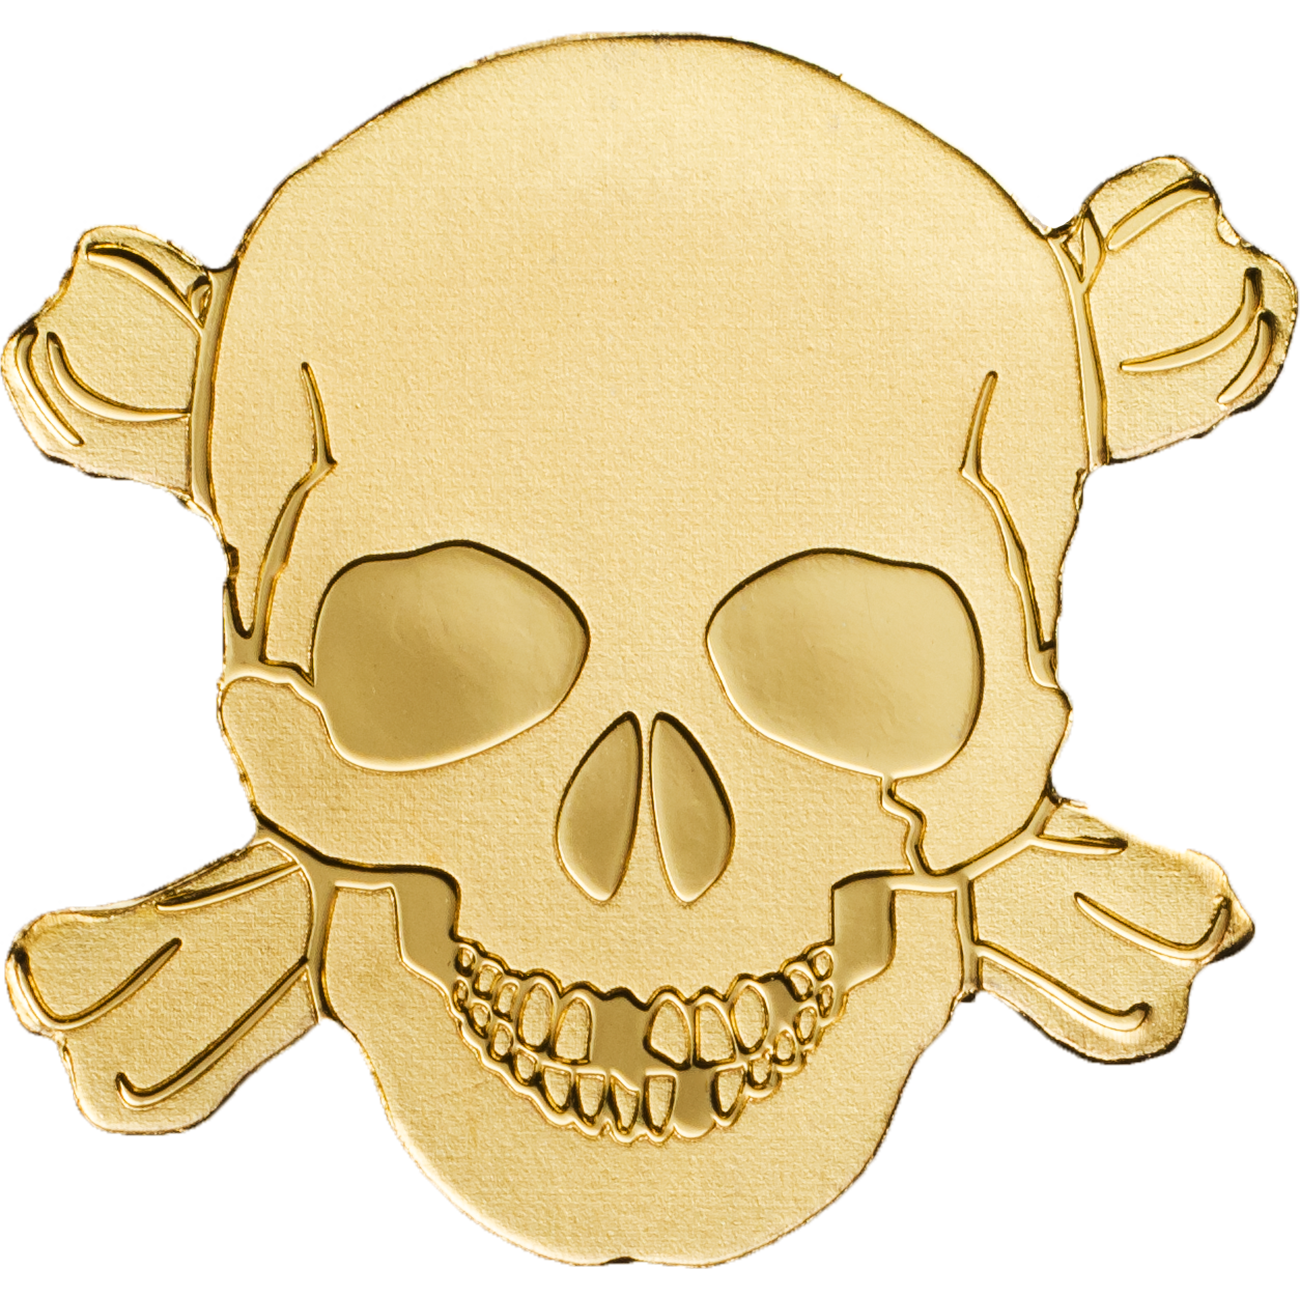 Immagine Trasparente del cranio del pirata